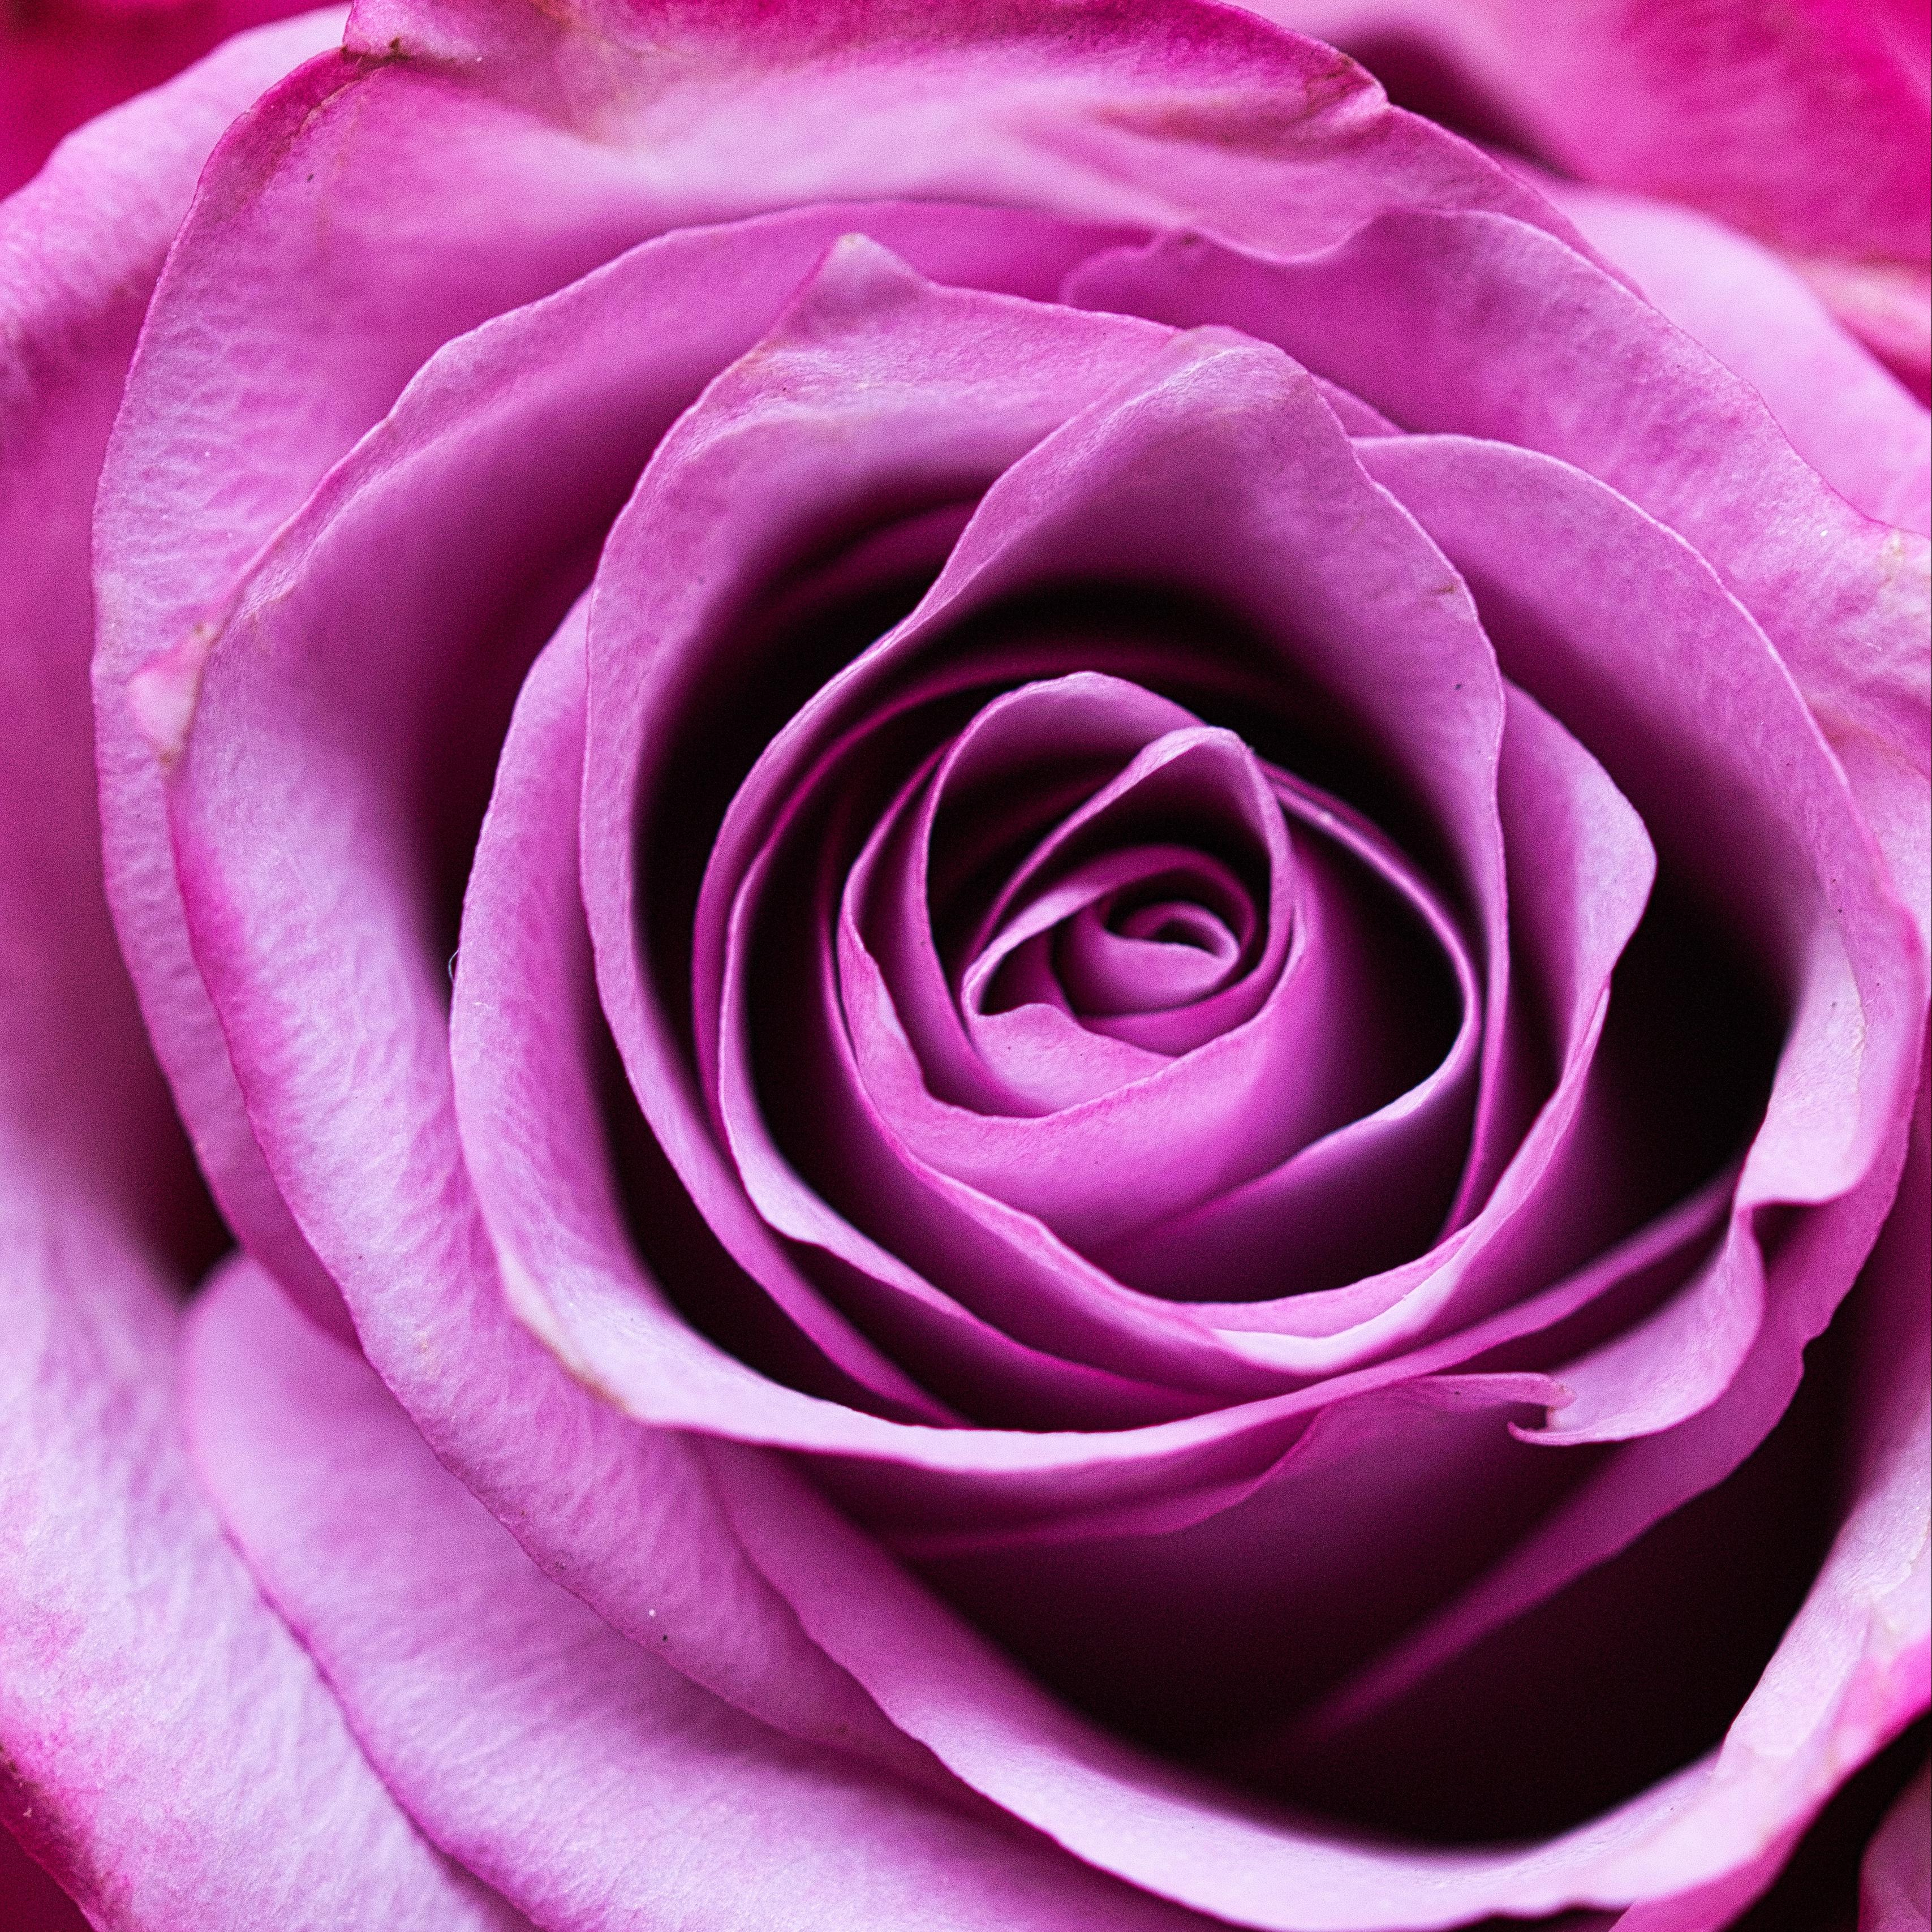 Download wallpaper 3415x3415 rose, flower, romance, closeup, pink